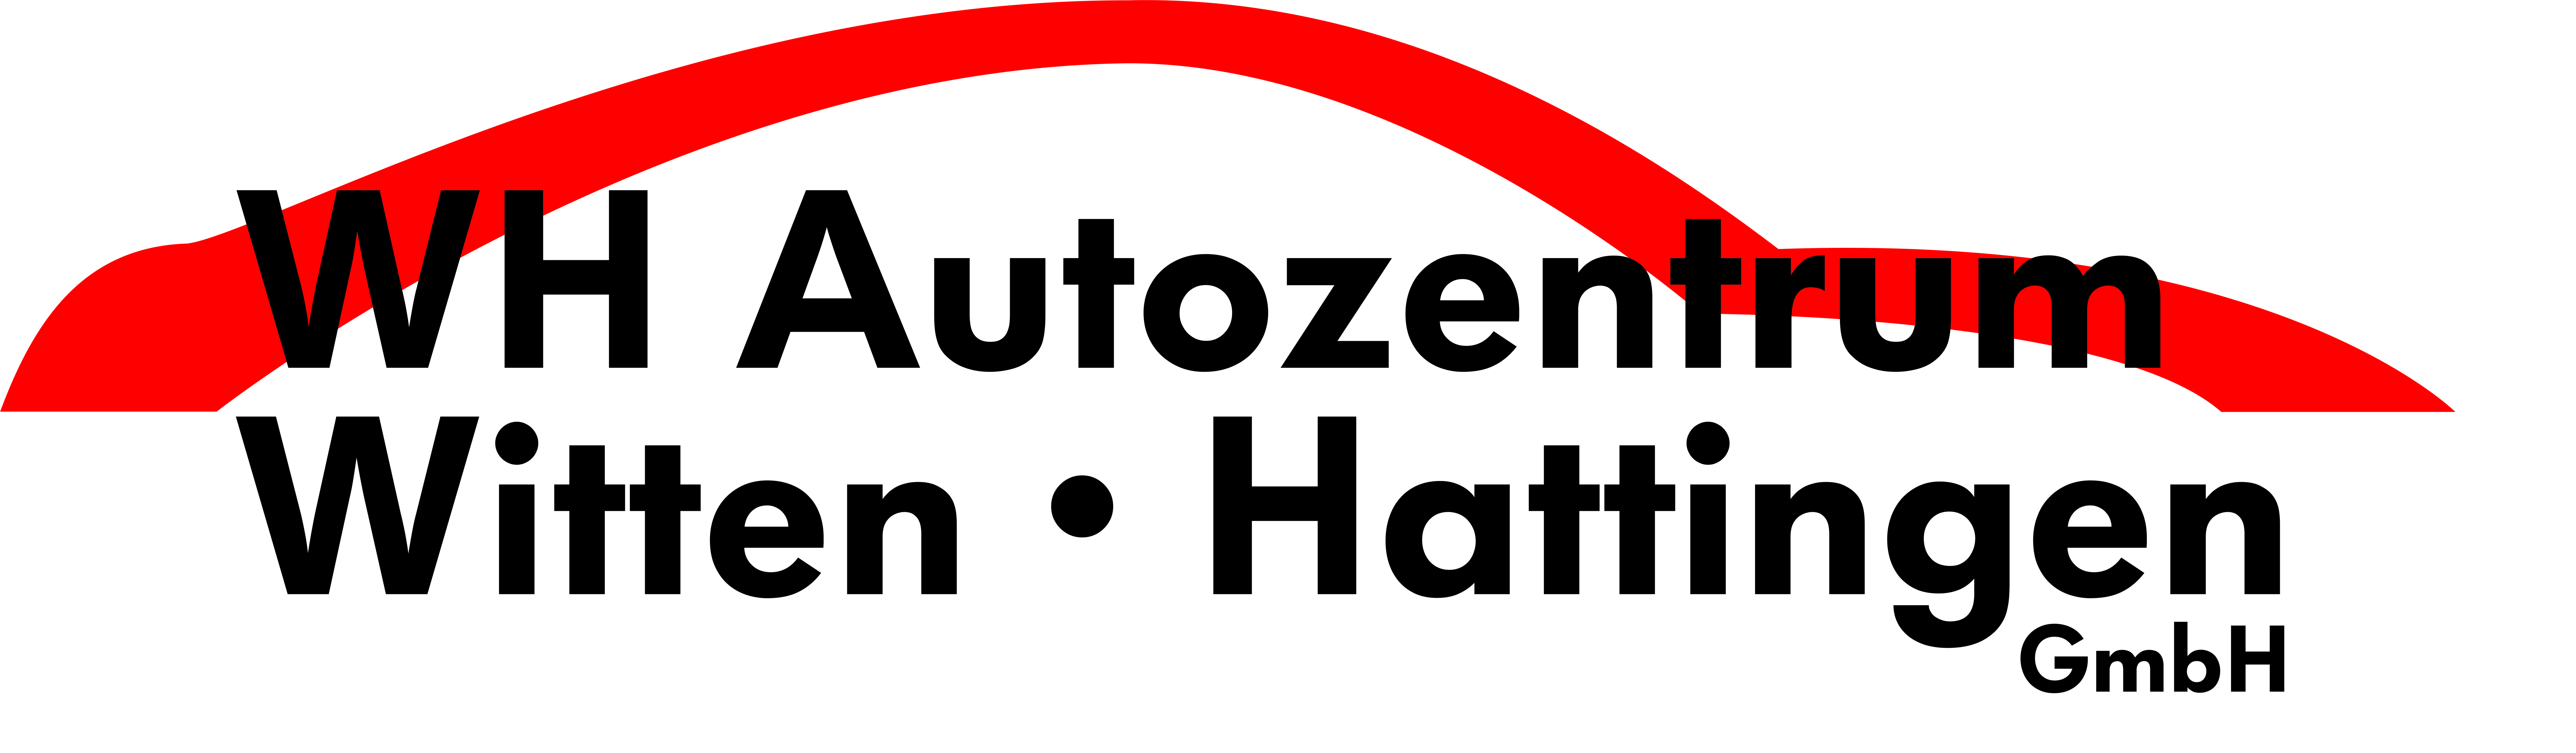 WH Autozentrum Witten/Hattingen GmbH